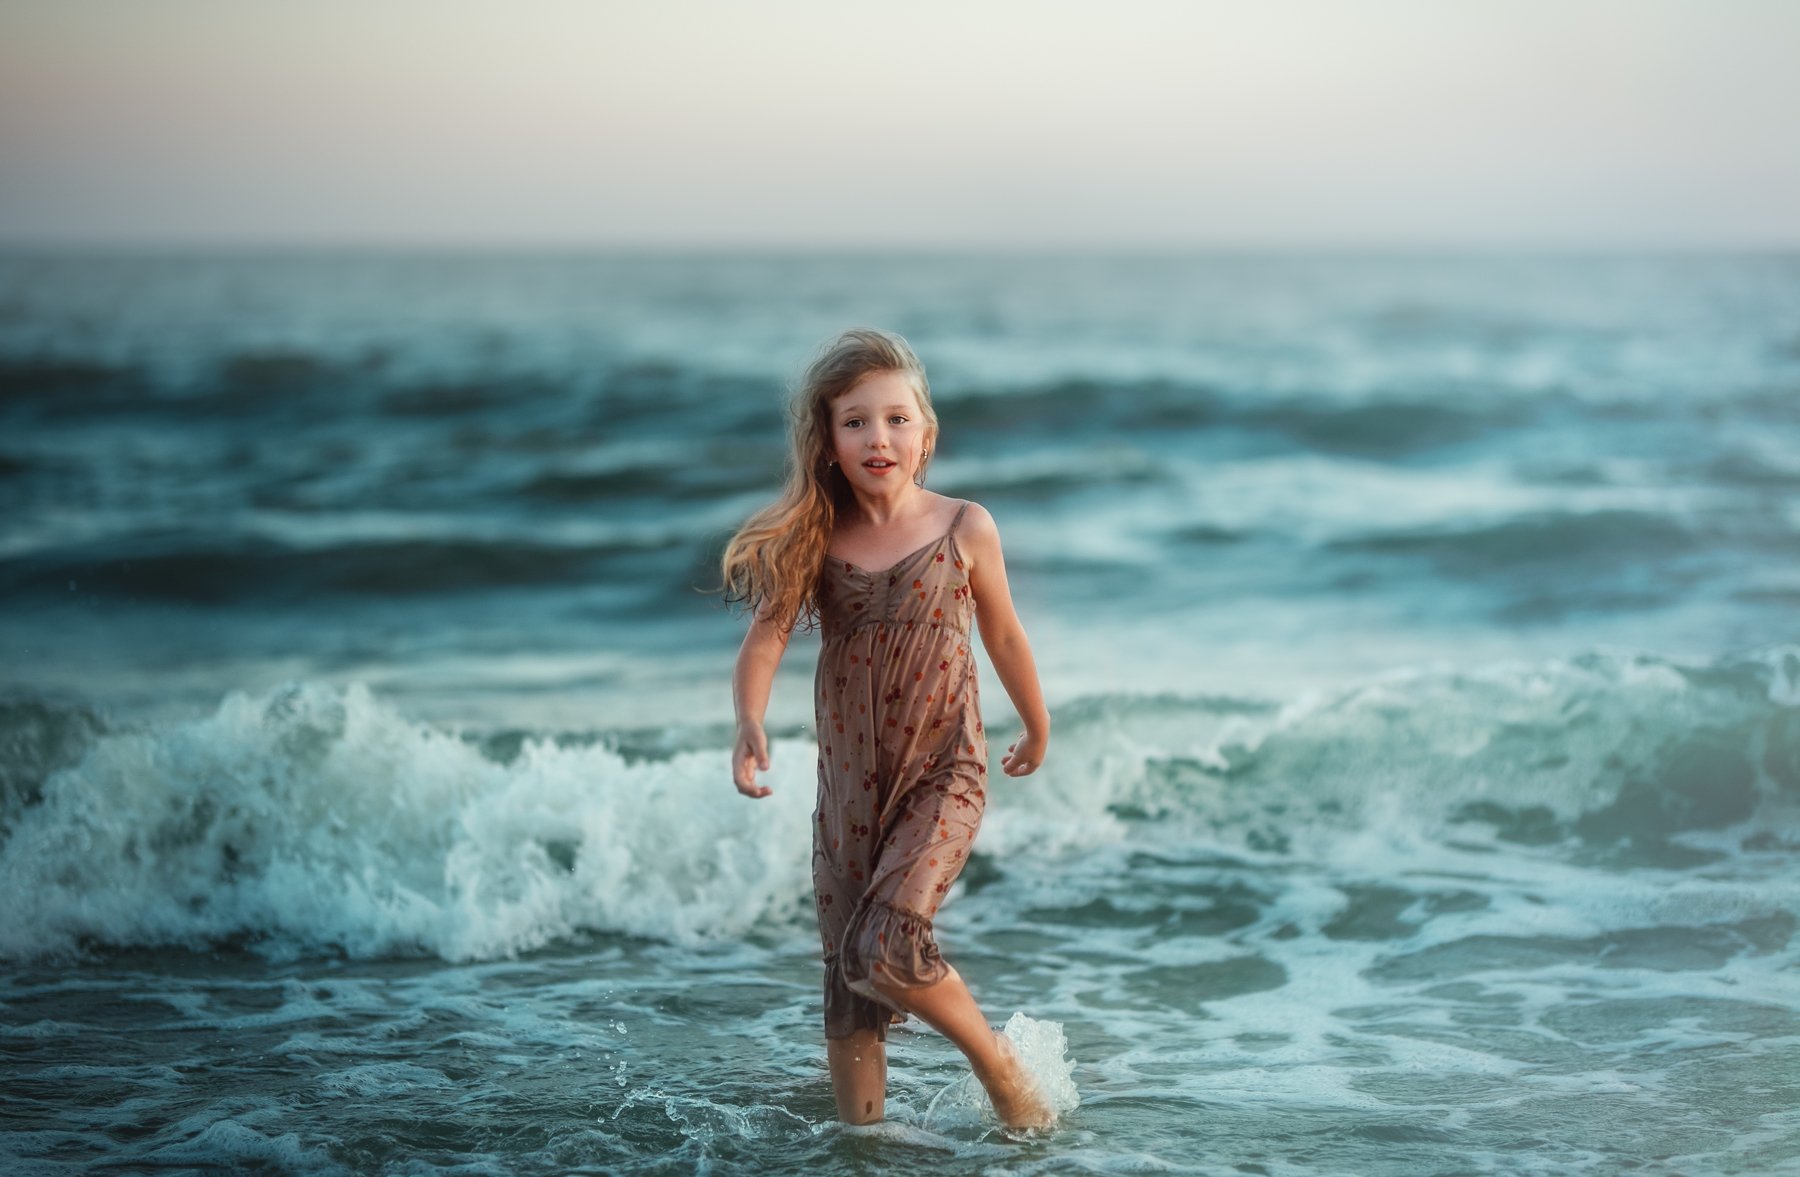 шторм море детство ребенок девочка волны брызги улыбка мокрая сарафан вечер лето, Марина Еленчук